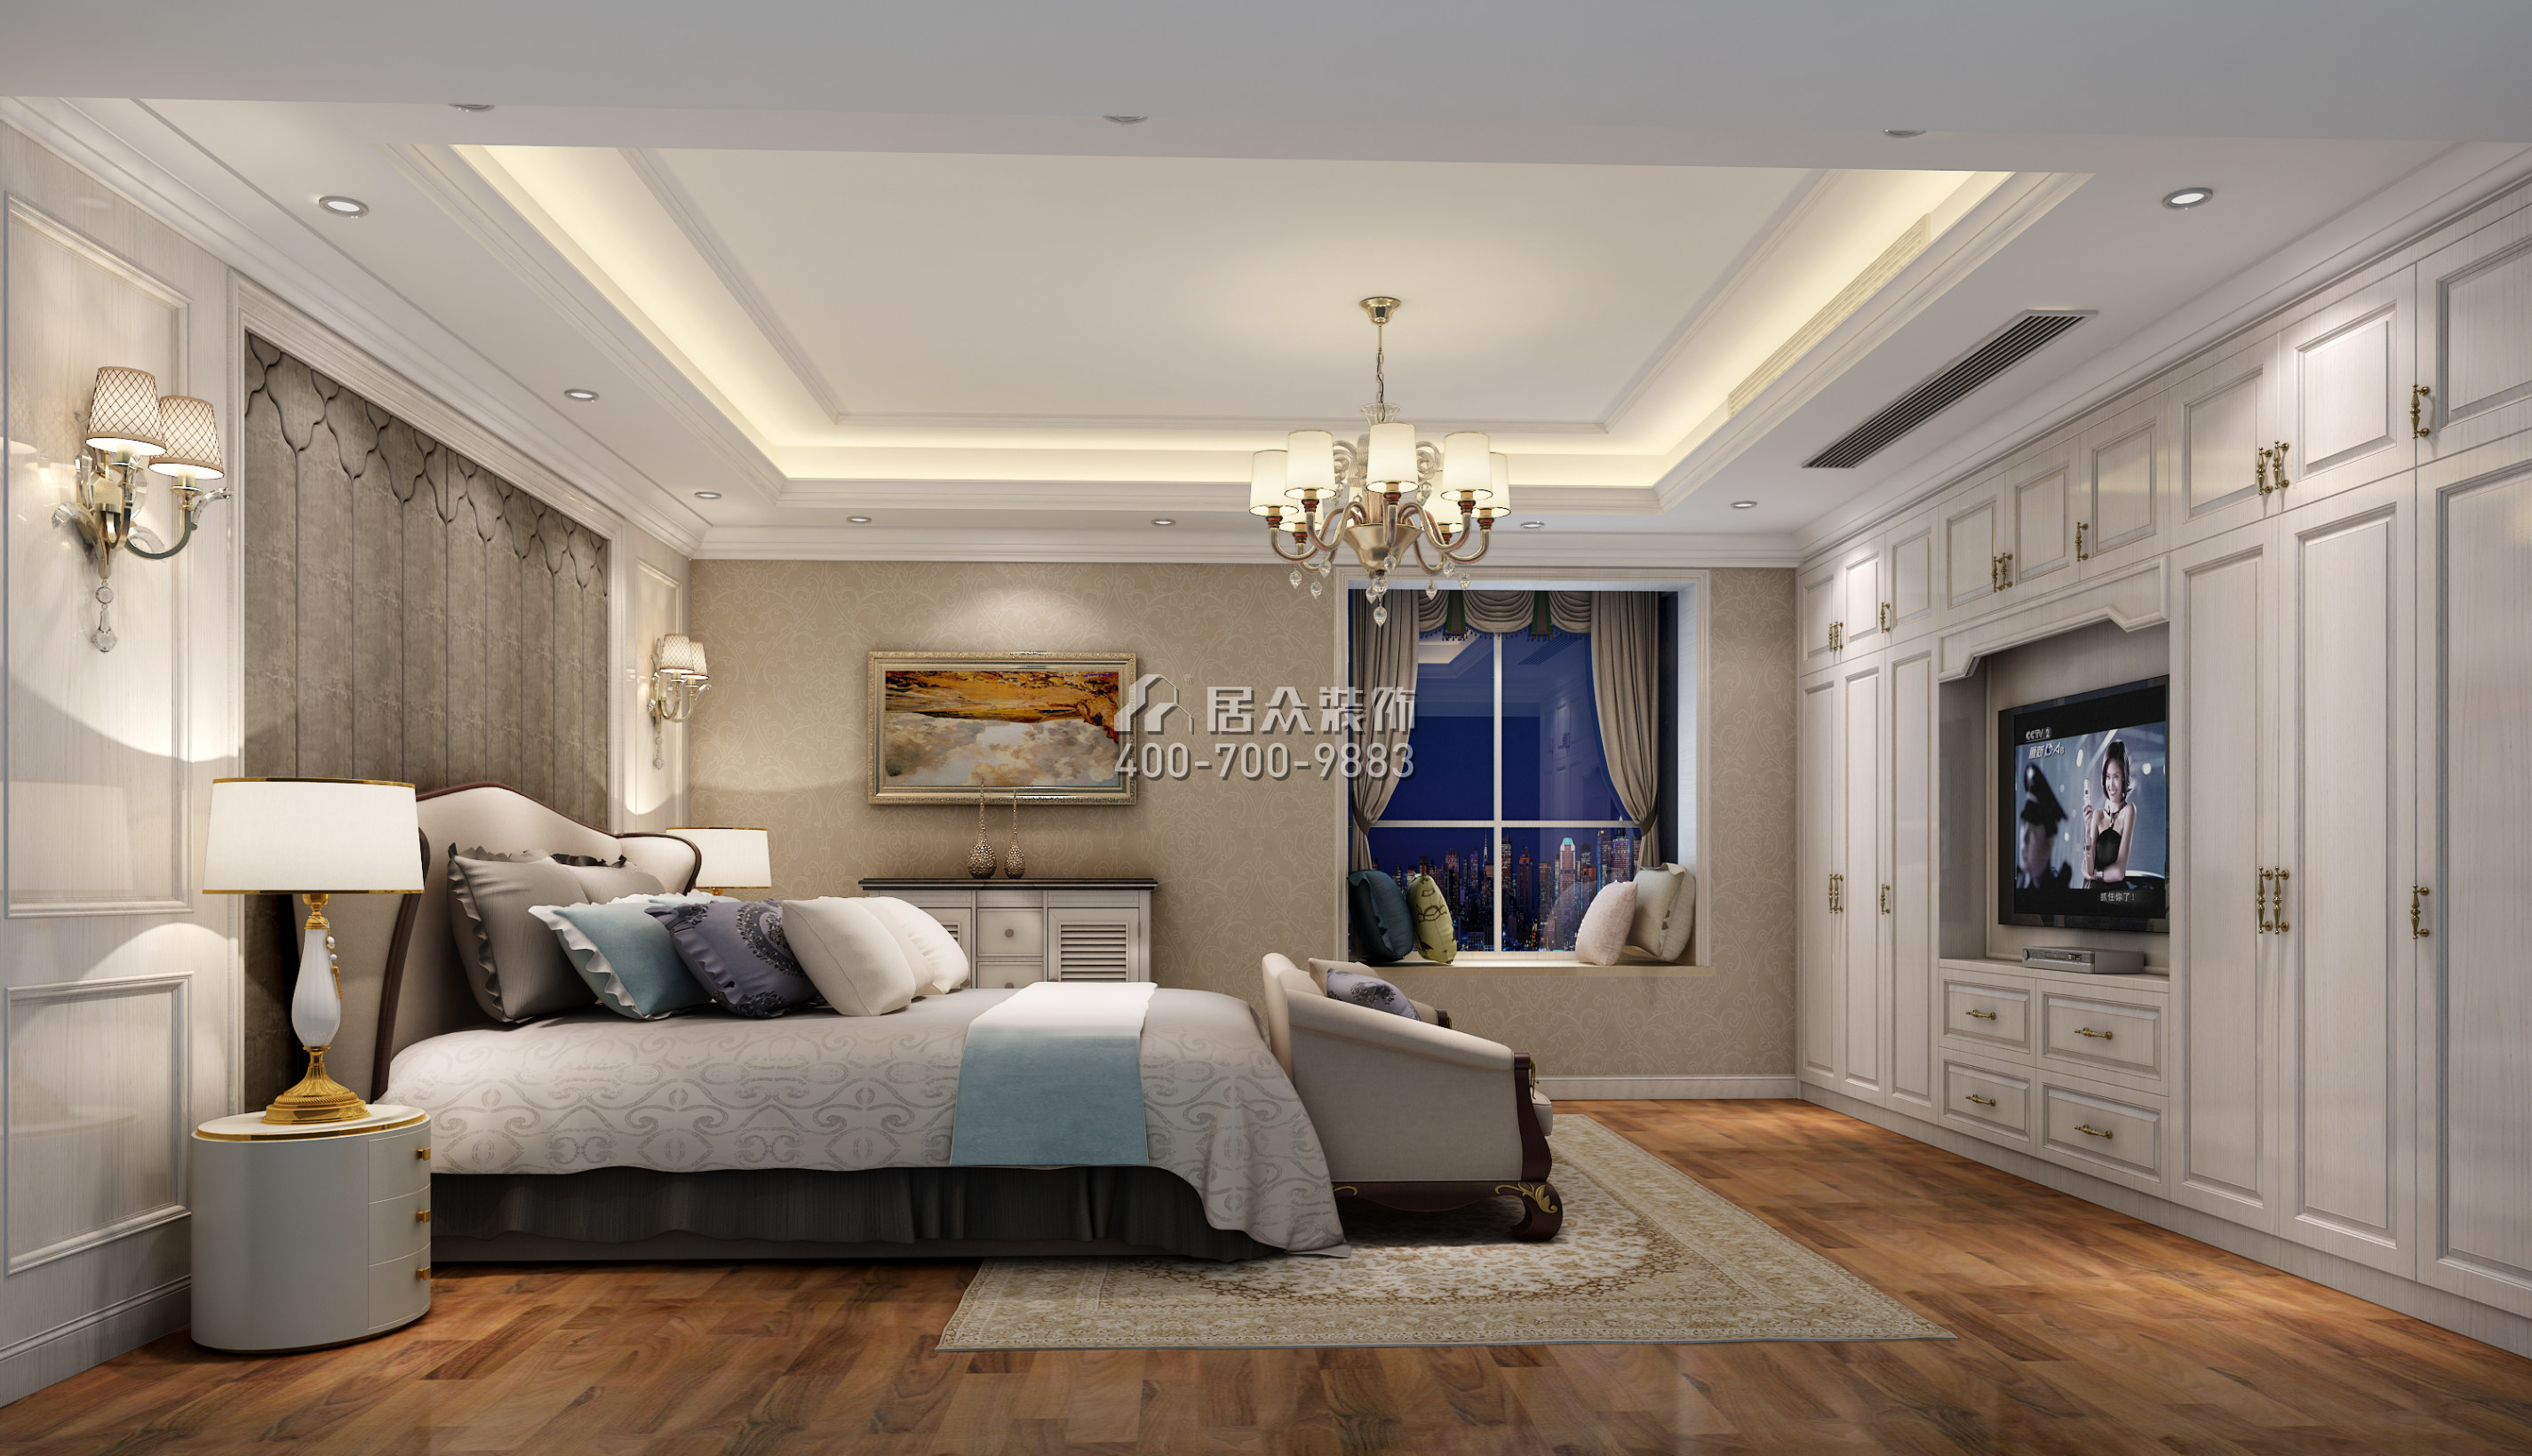 汇雅苑140平方米混搭风格平层户型卧室装修效果图